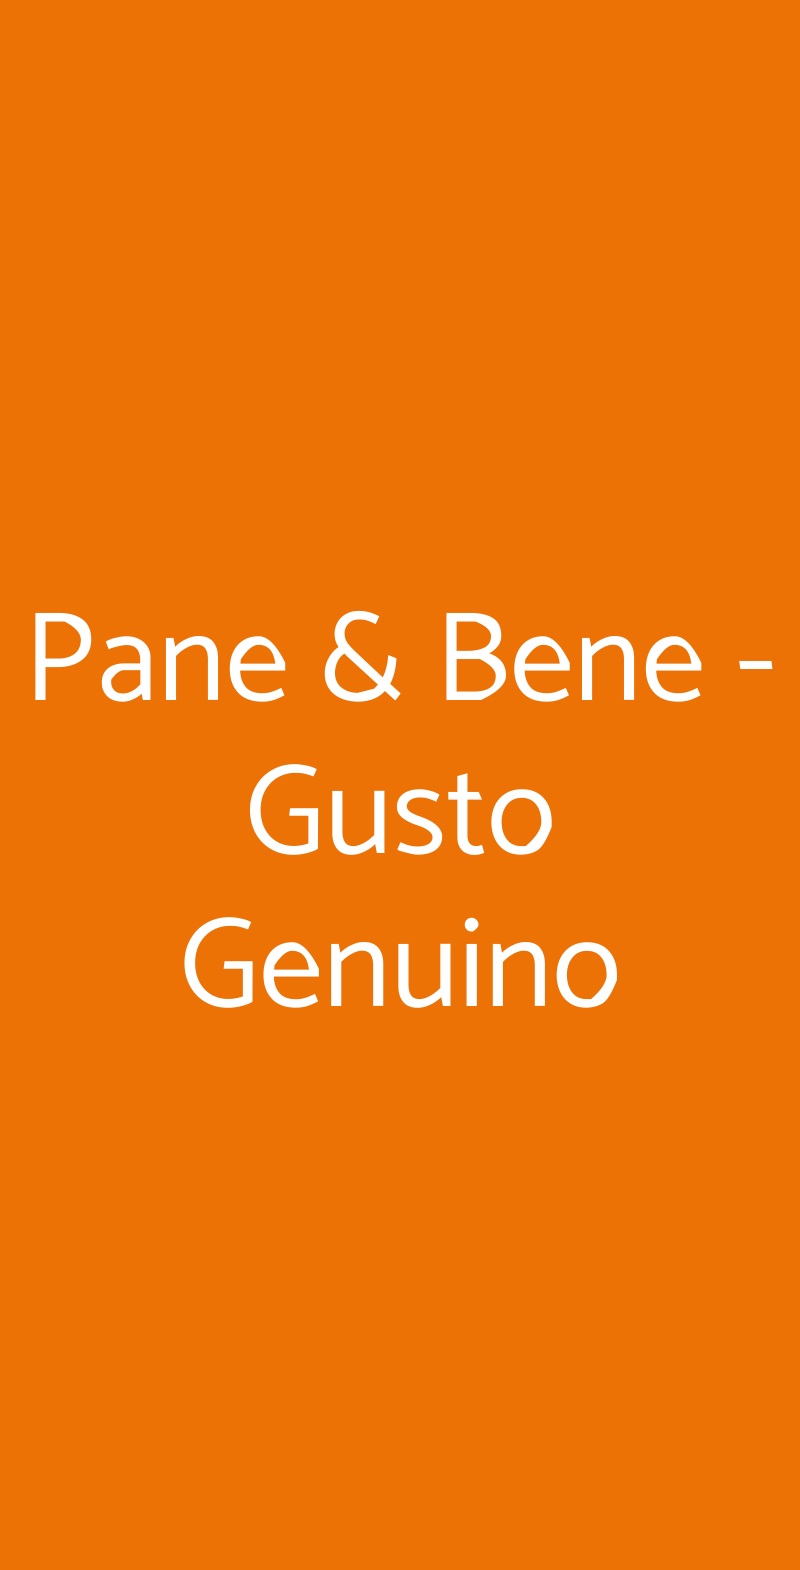 Pane & Bene - Gusto Genuino Roma menù 1 pagina